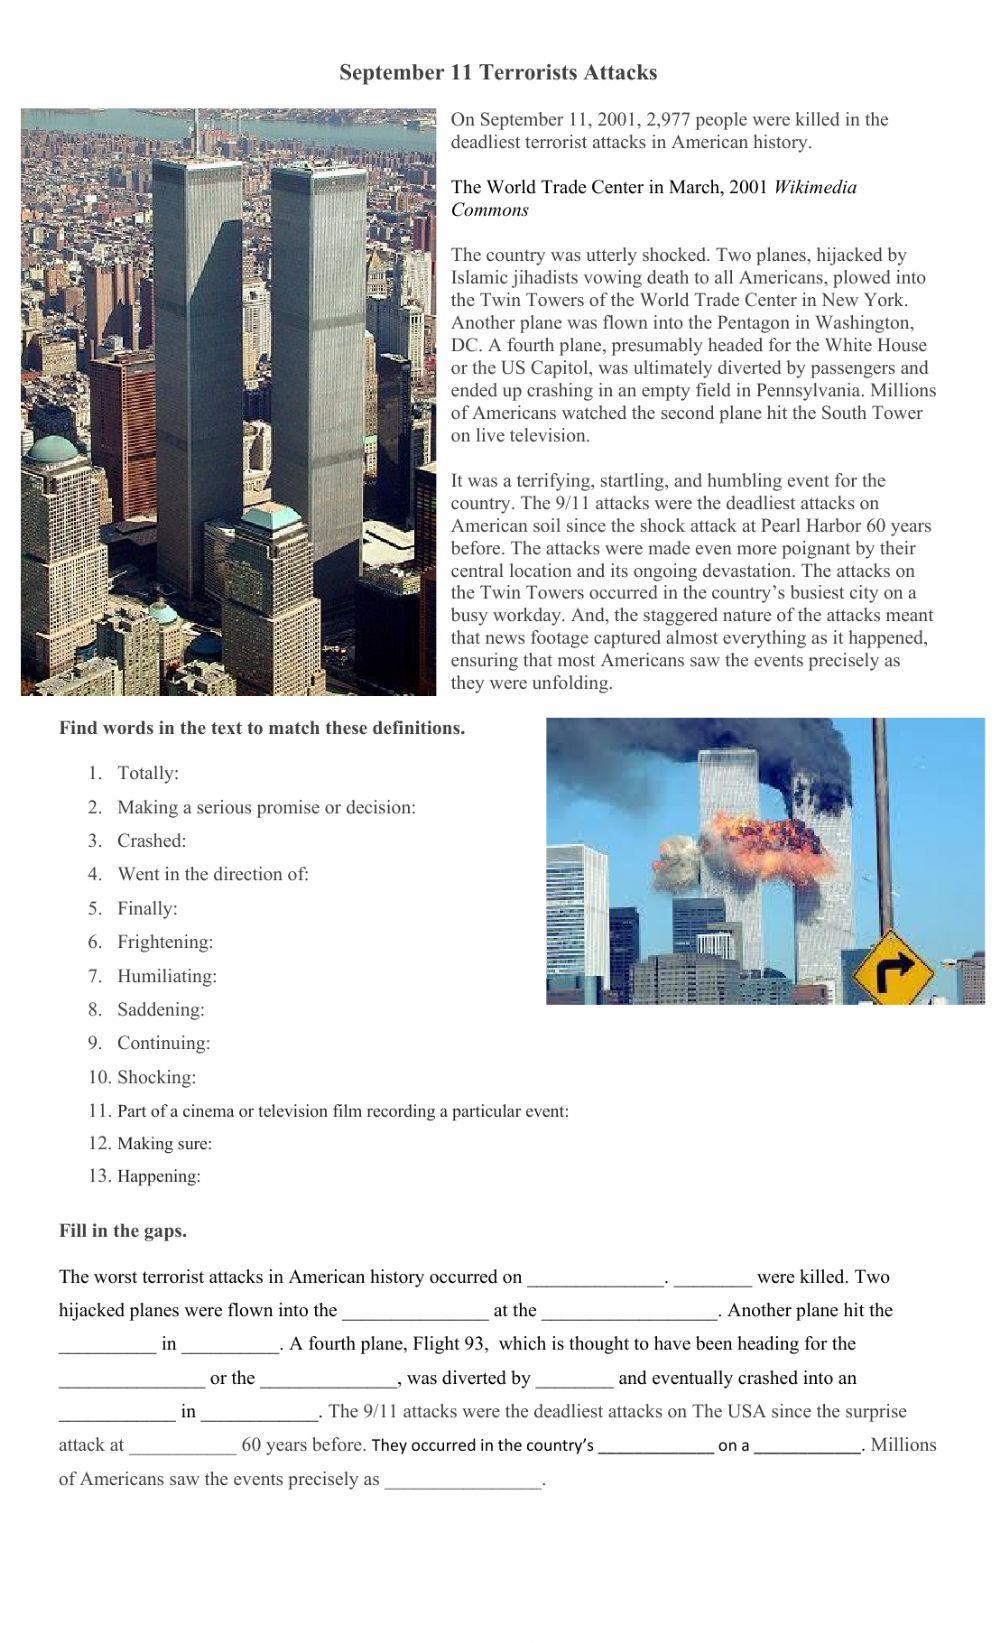 September 11 Terrorist Attacks